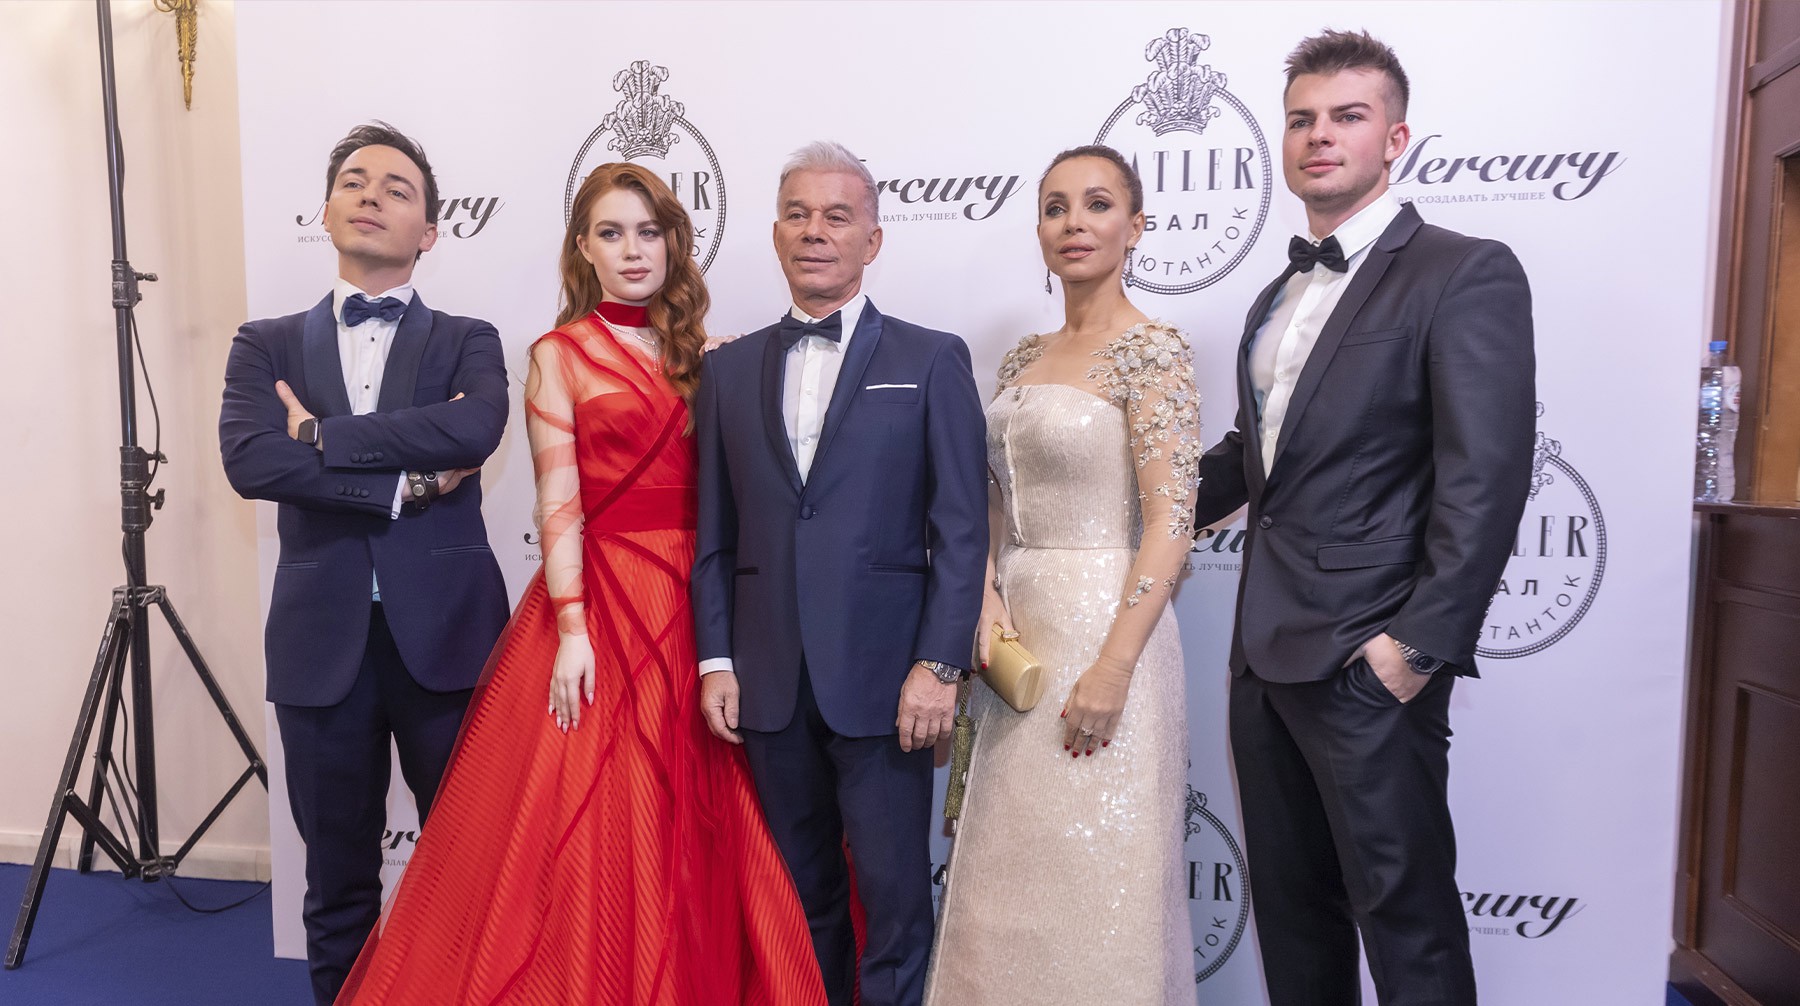 Певец Олег Газманов в центре с супругой Мариной, дочерью Марианной и сыновьями